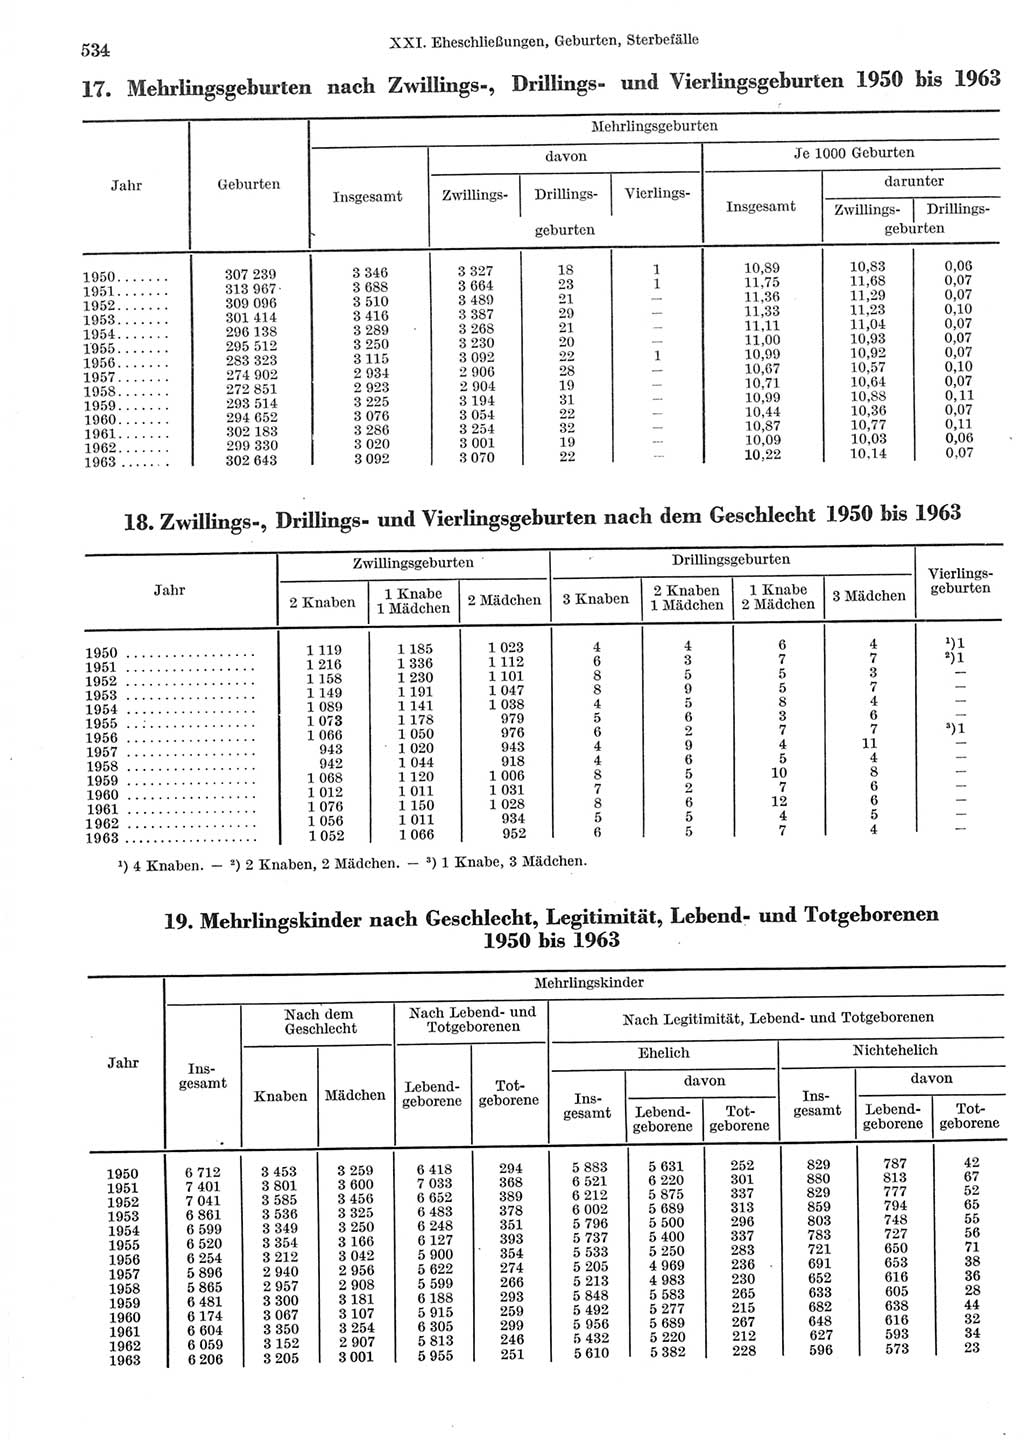 Statistisches Jahrbuch der Deutschen Demokratischen Republik (DDR) 1965, Seite 534 (Stat. Jb. DDR 1965, S. 534)